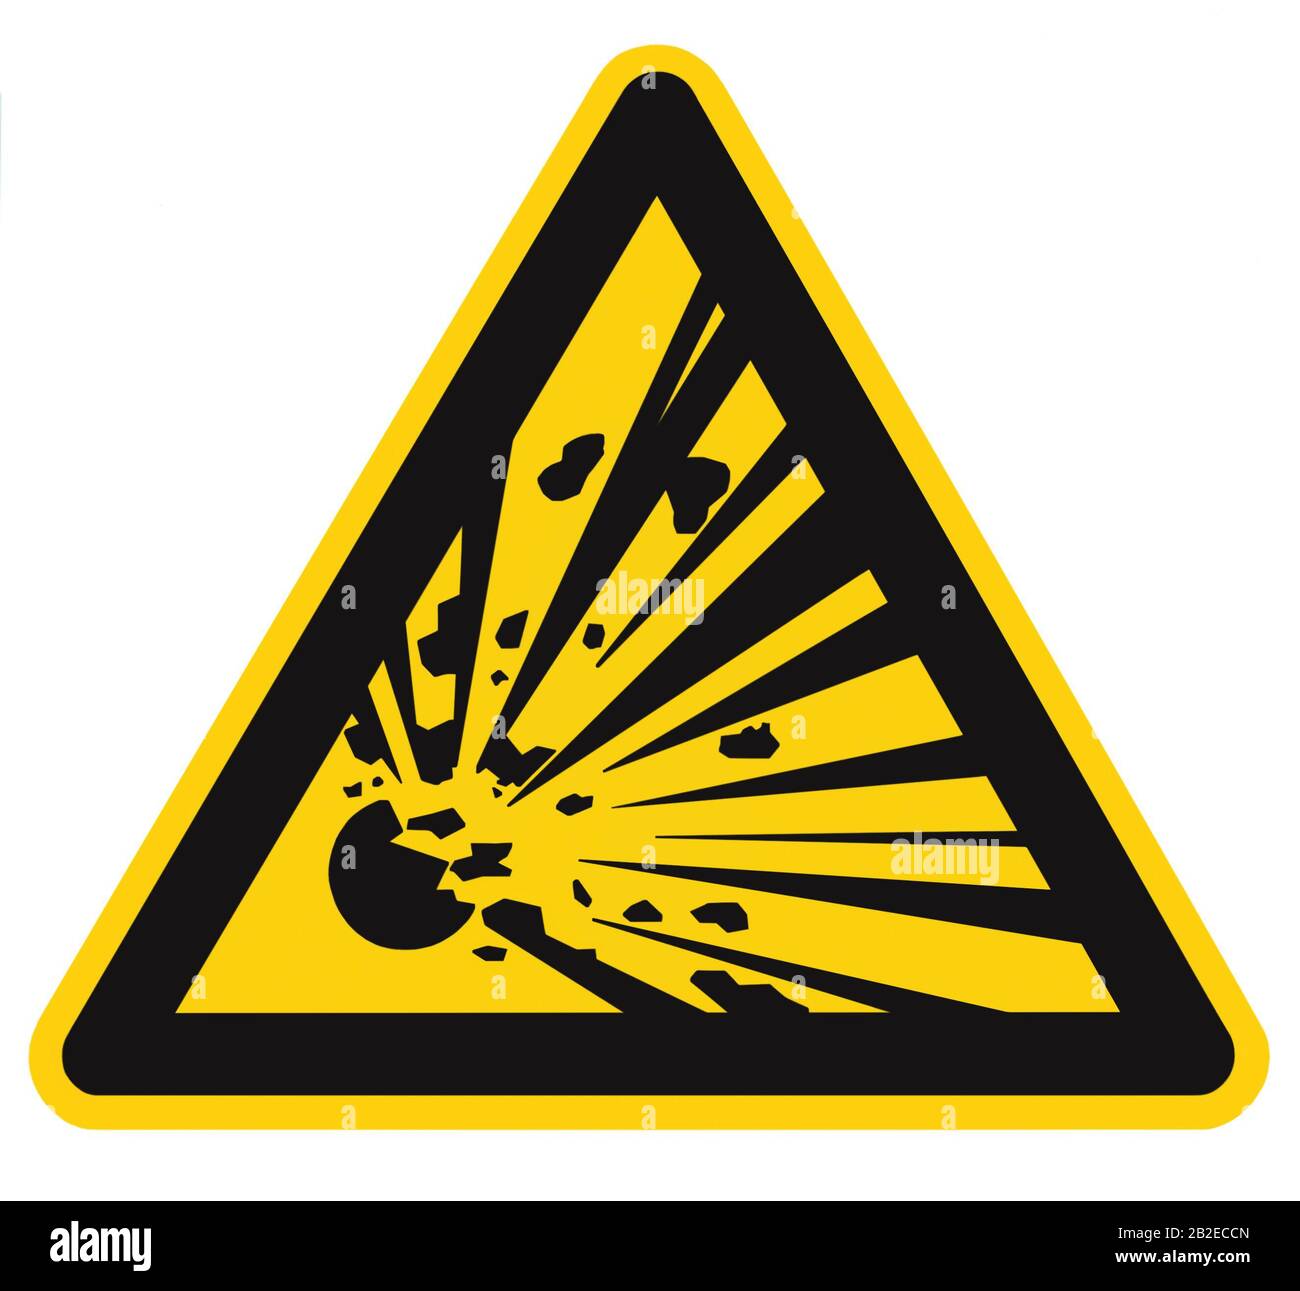 Danger, zone de dynamitage, personnel autorisé uniquement, rester à l'écart, danger zone avertissement avertissement, icône explosion signalisation autocollant jaune triangle Banque D'Images